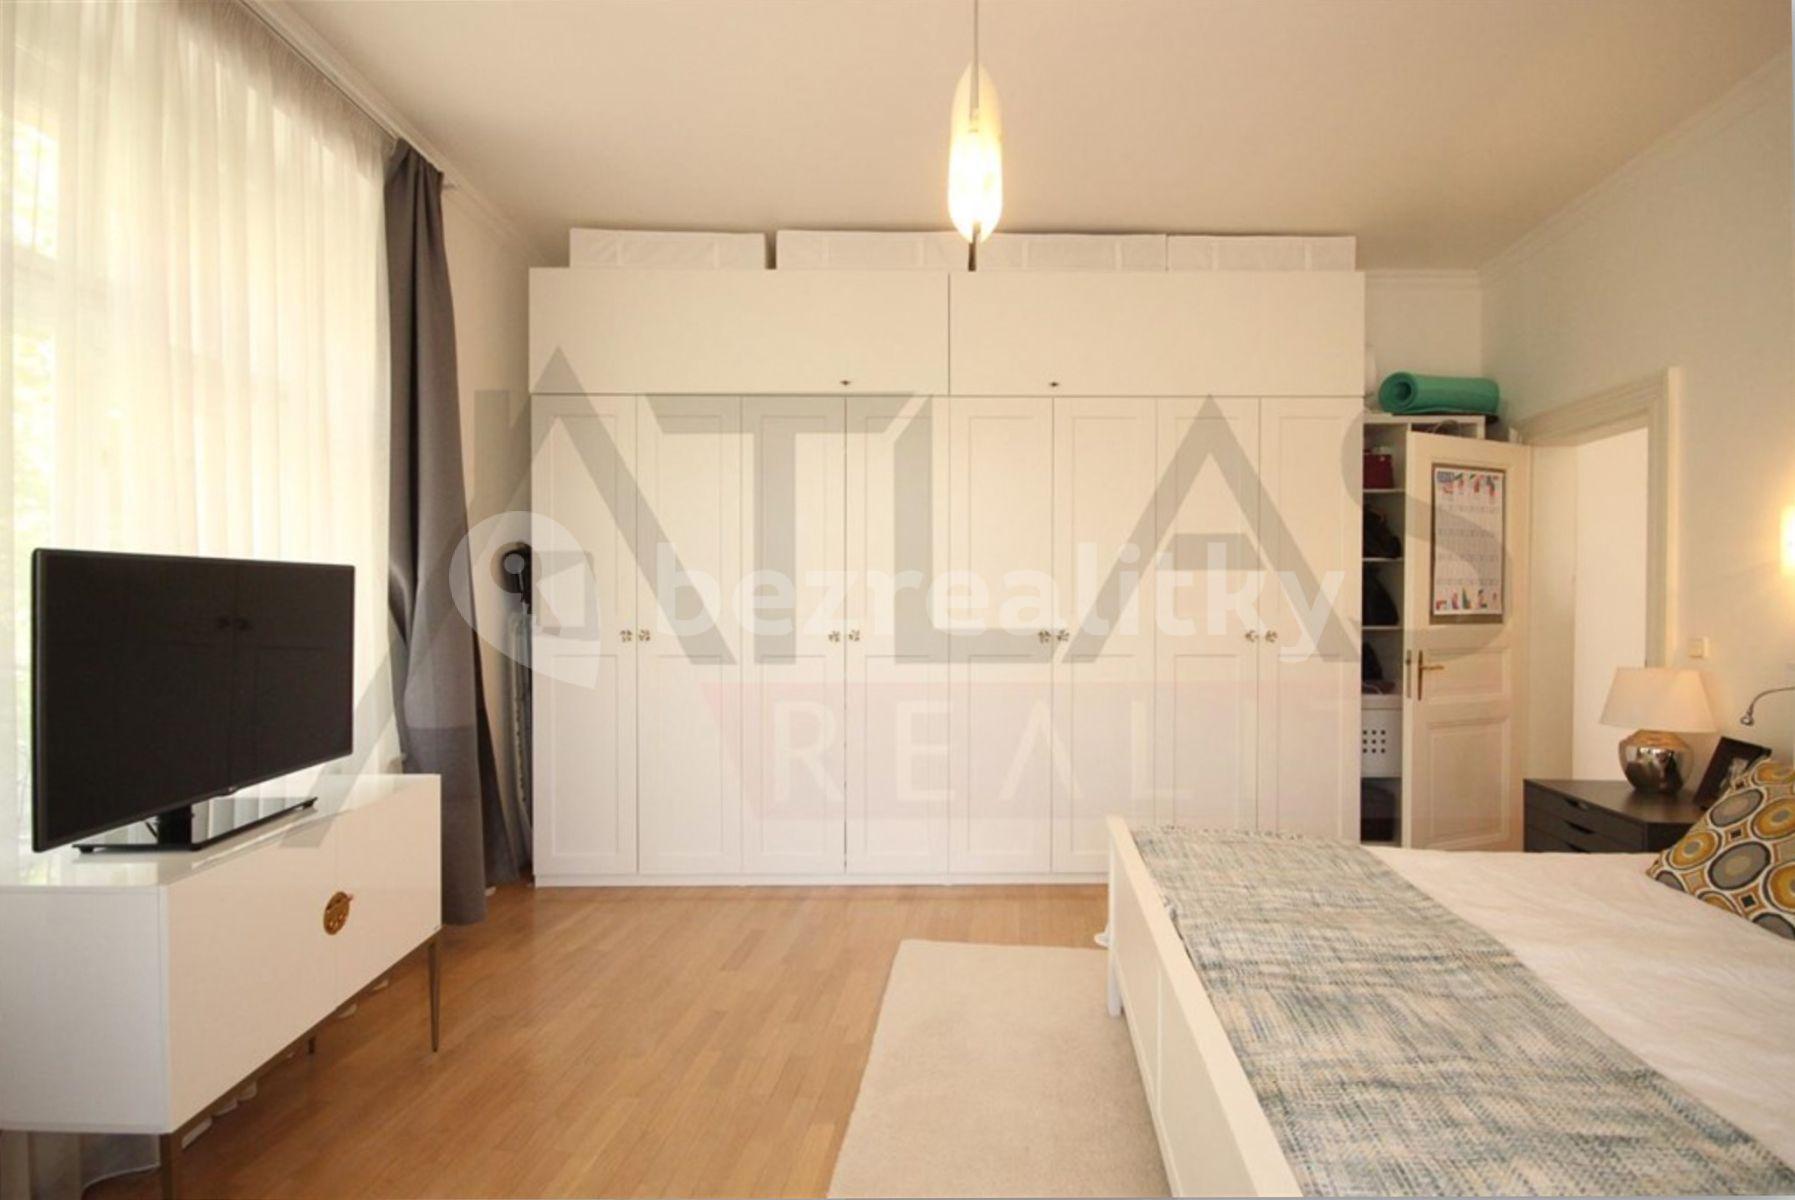 2 bedroom with open-plan kitchen flat to rent, 120 m², náměstí Jiřího z Poděbrad, Prague, Prague